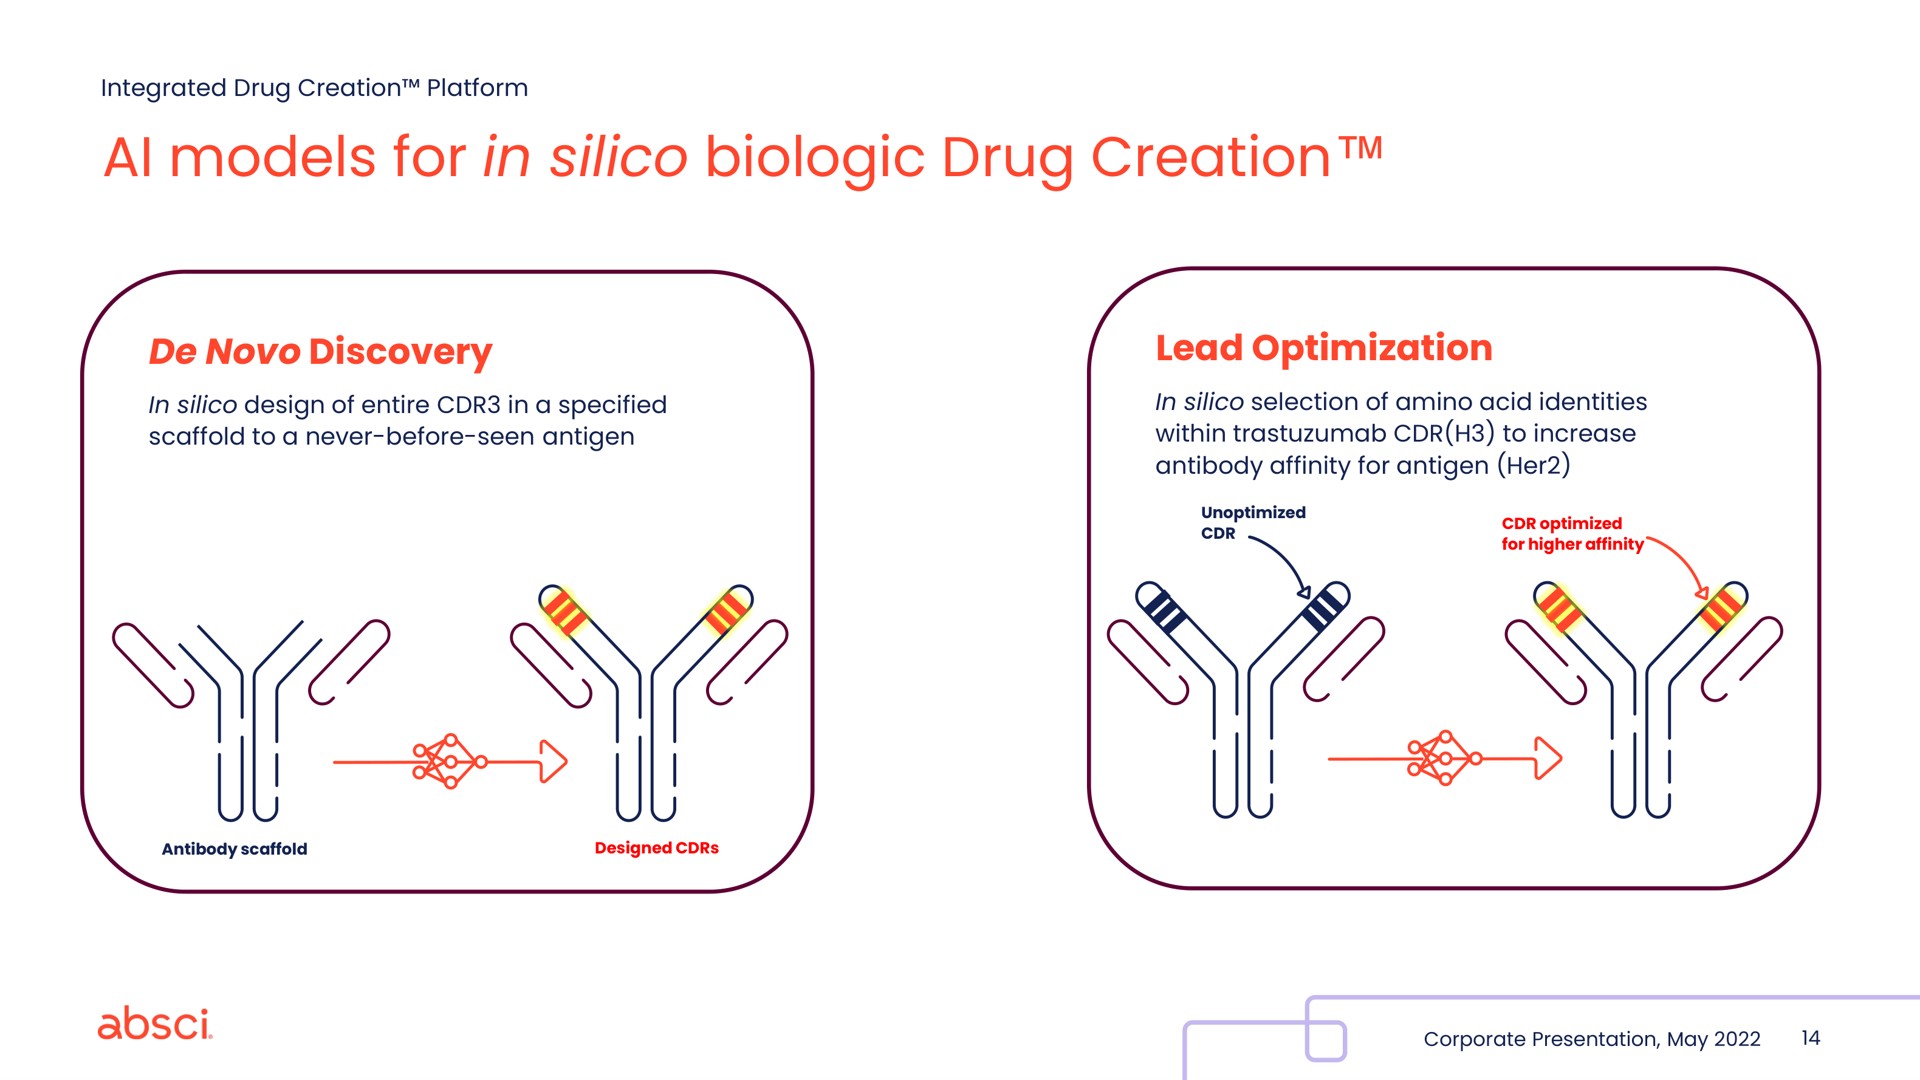 models for in silico biologic drug creation | Absci